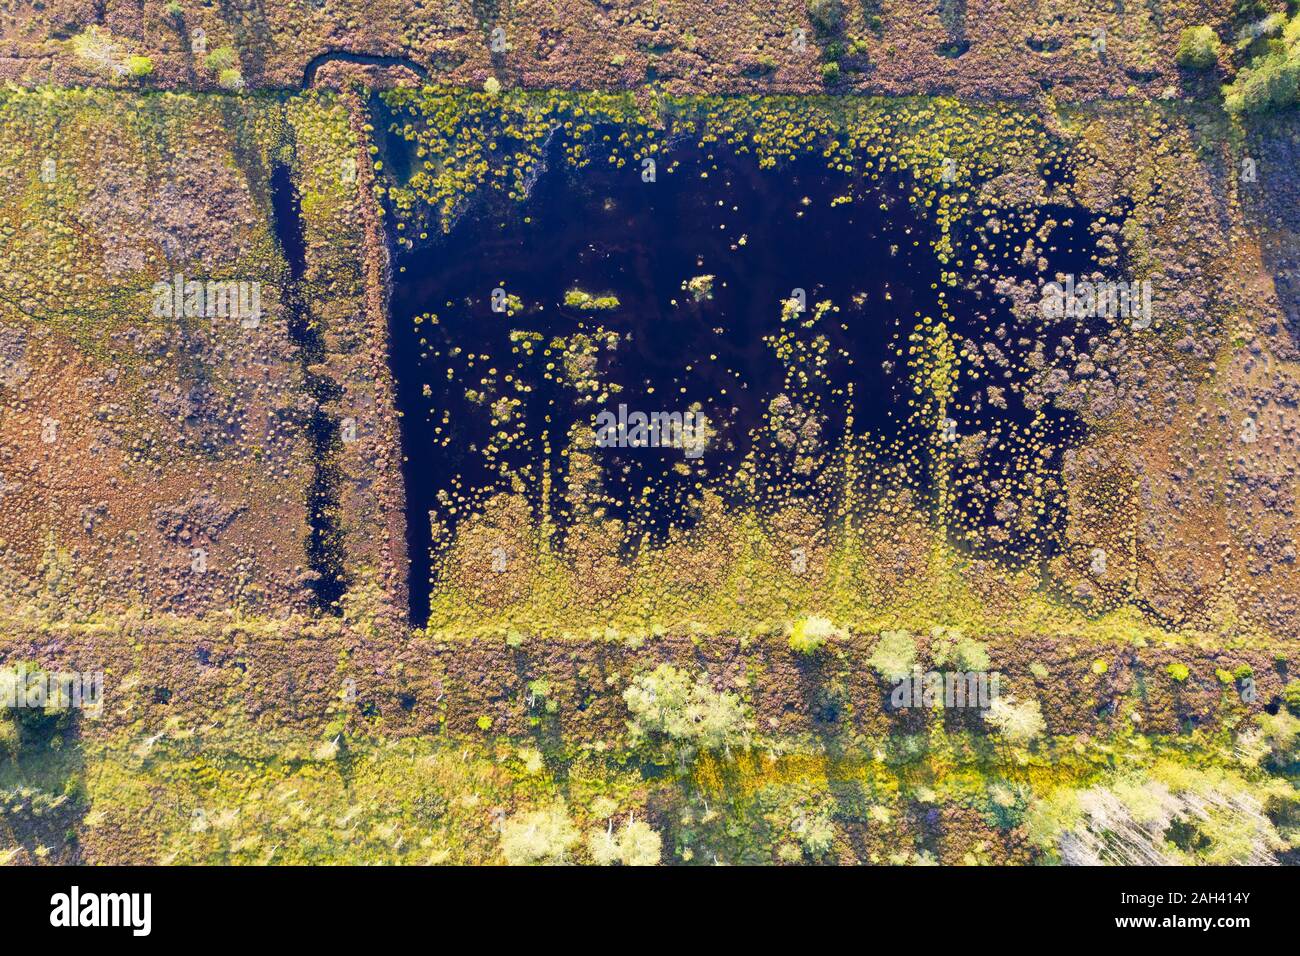 Allemagne, Bavière, Konigsdorf, vue aérienne d'Konigsdorfer Moor au cours de la renaturation Banque D'Images